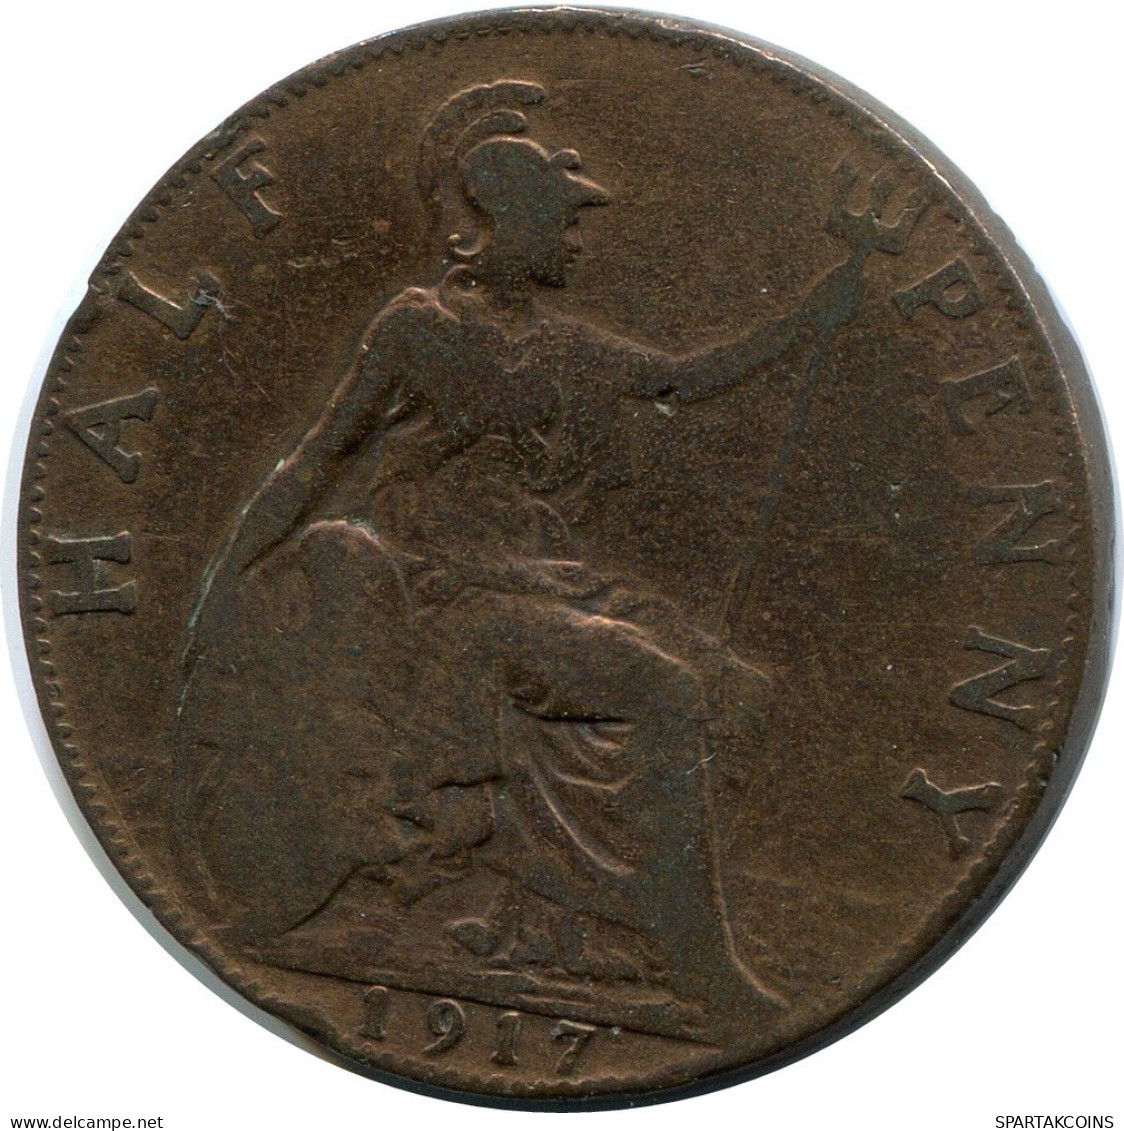 HALF PENNY 1917 UK GREAT BRITAIN Coin #BA962.U.A - C. 1/2 Penny